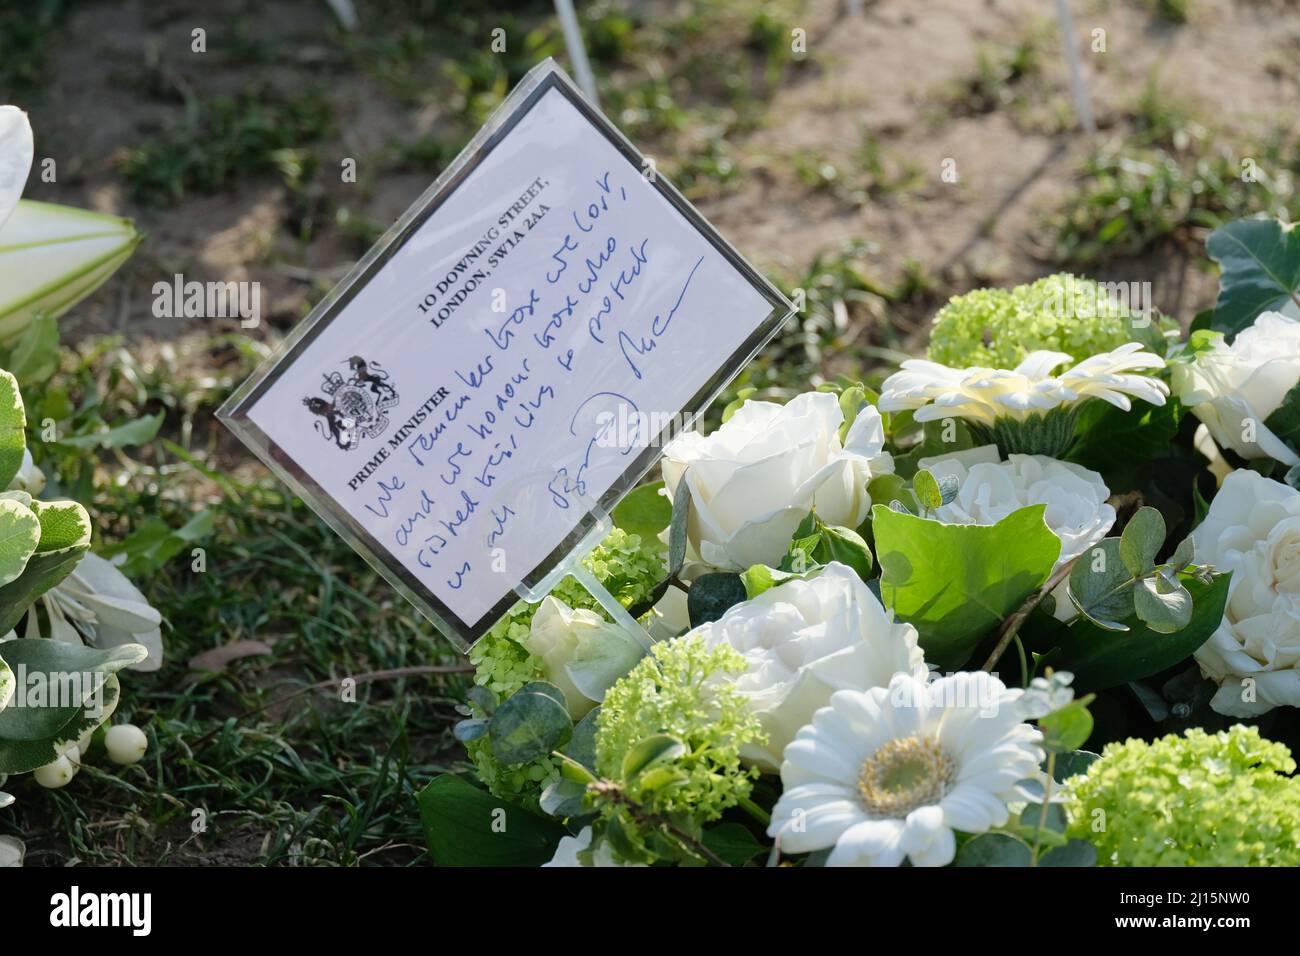 Londra, Regno Unito. Un messaggio tributo floreale scritto dal primo Ministro Boris Johnson che ricorda le vittime dell'attacco terroristico di Wesminster del 2017. Foto Stock